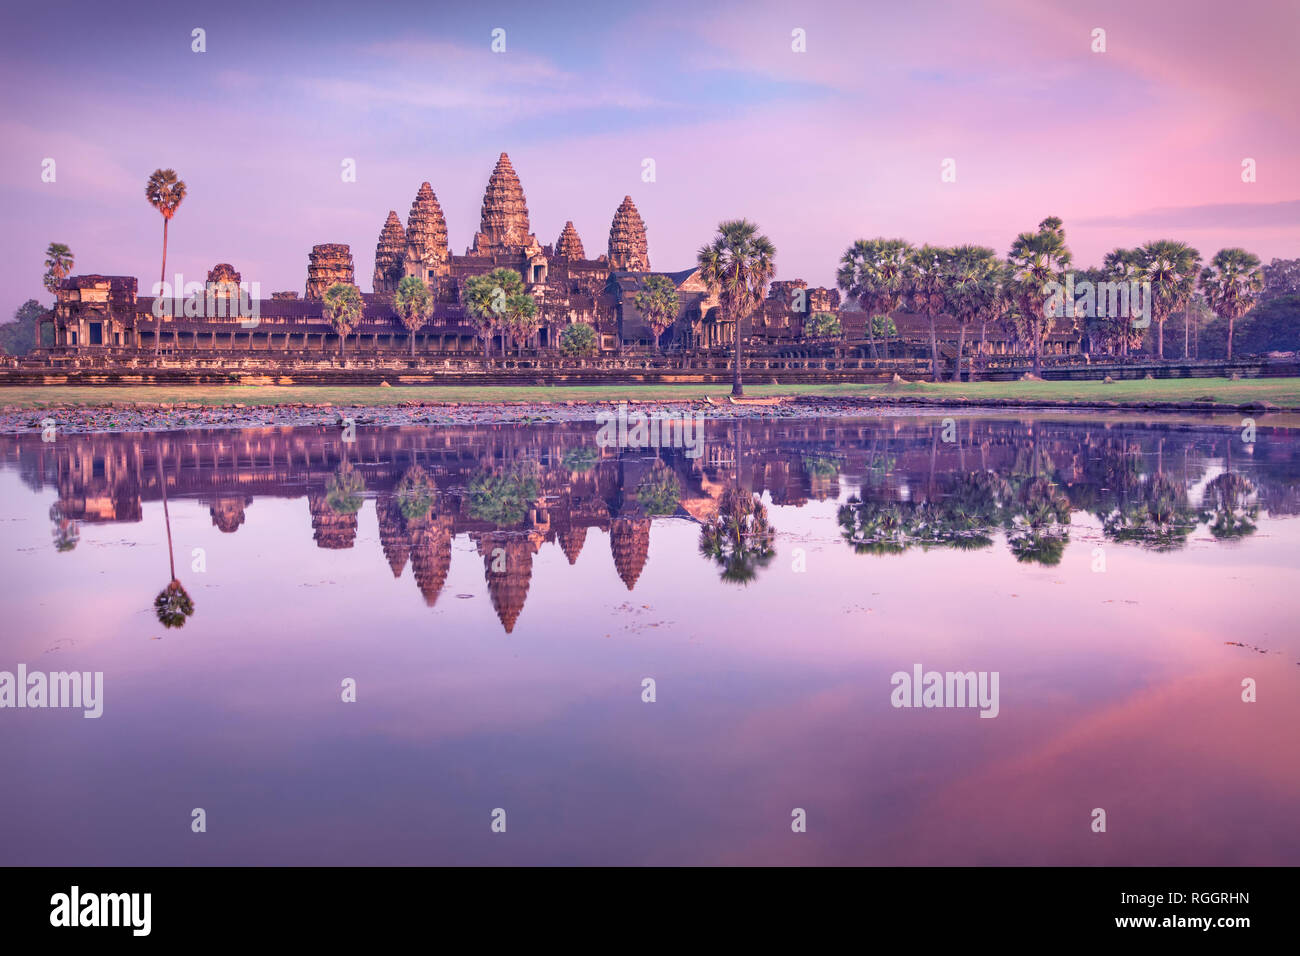 Al amanecer del templo de Angkor Wat, Siem Reap, Camboya Foto de stock